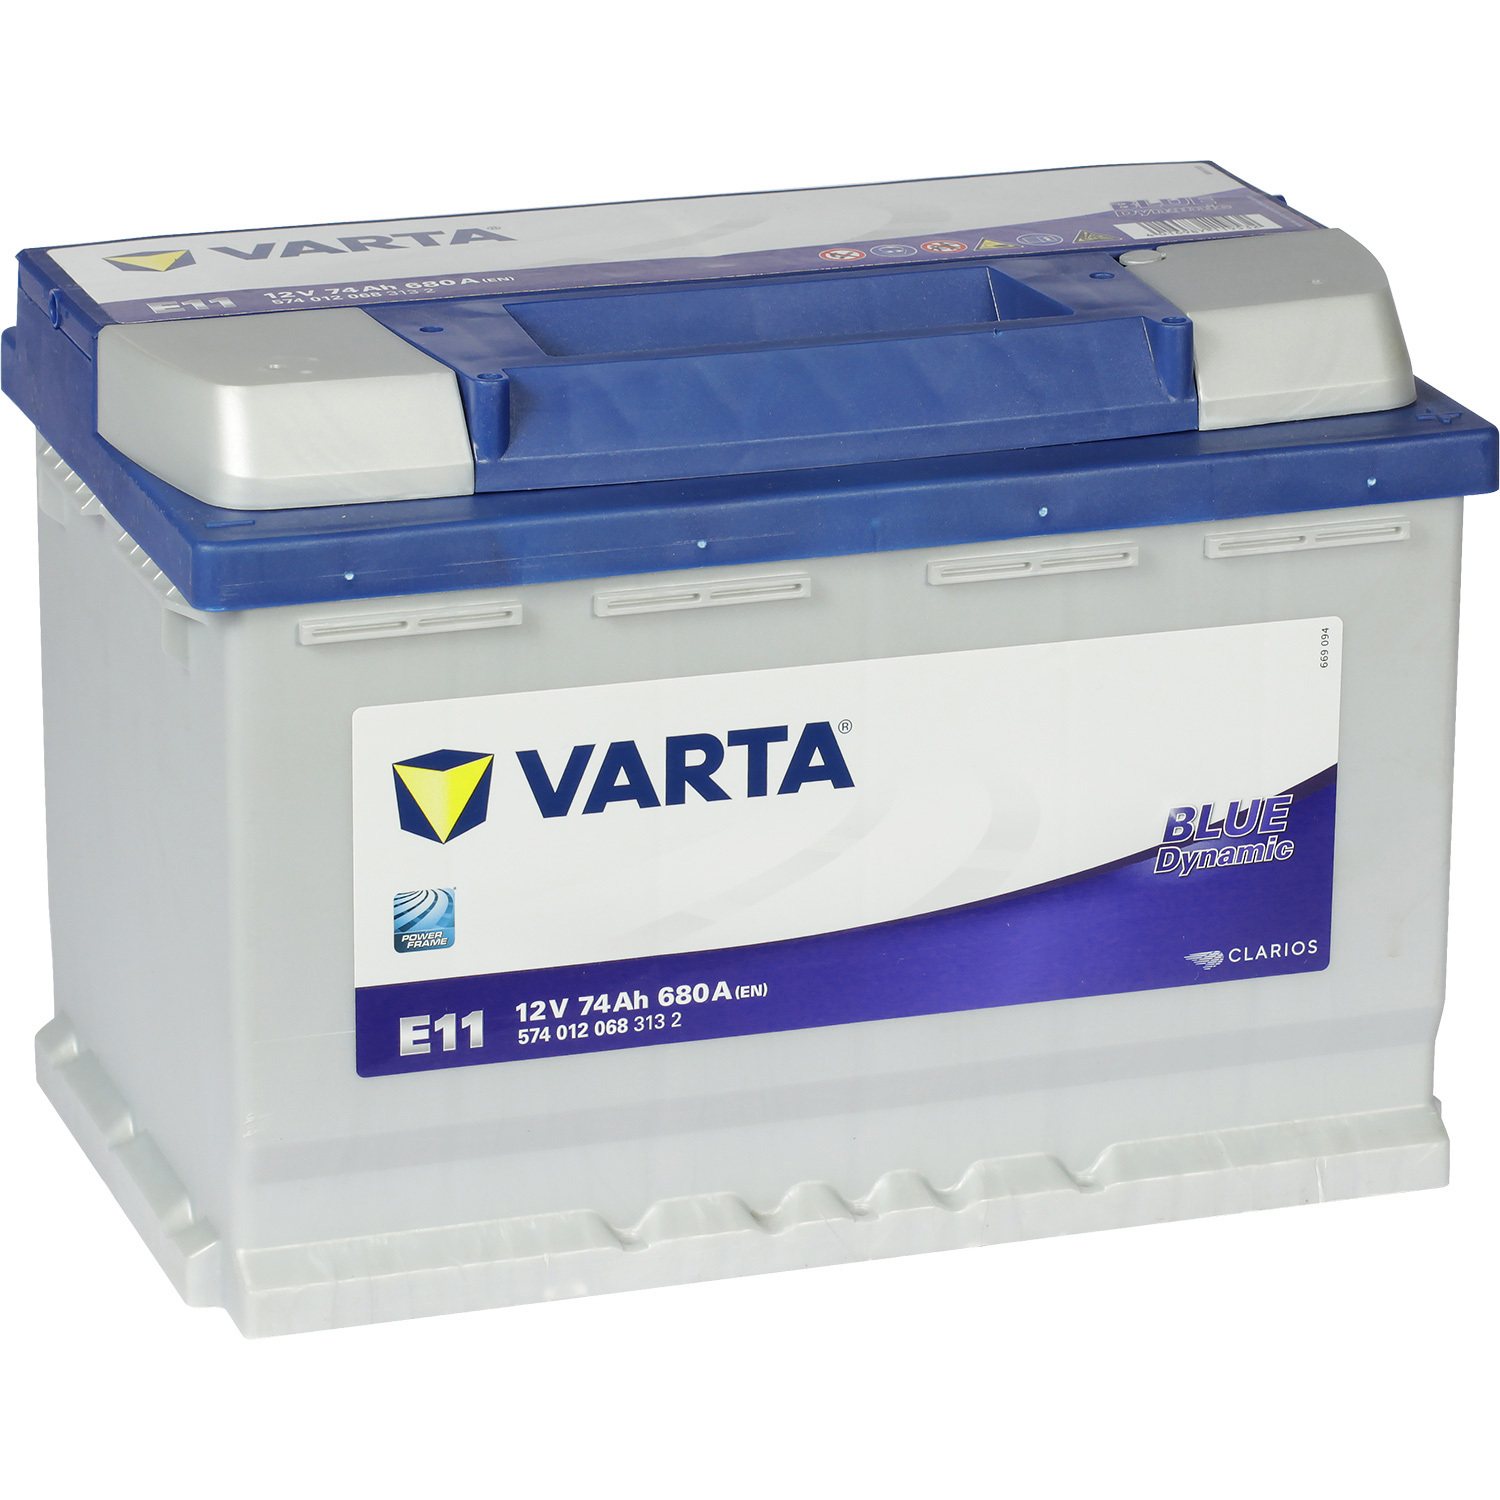 Varta Автомобильный аккумулятор Varta Blue Dynamic E11 74 Ач обратная полярность L3 varta автомобильный аккумулятор varta 80 ач обратная полярность l4